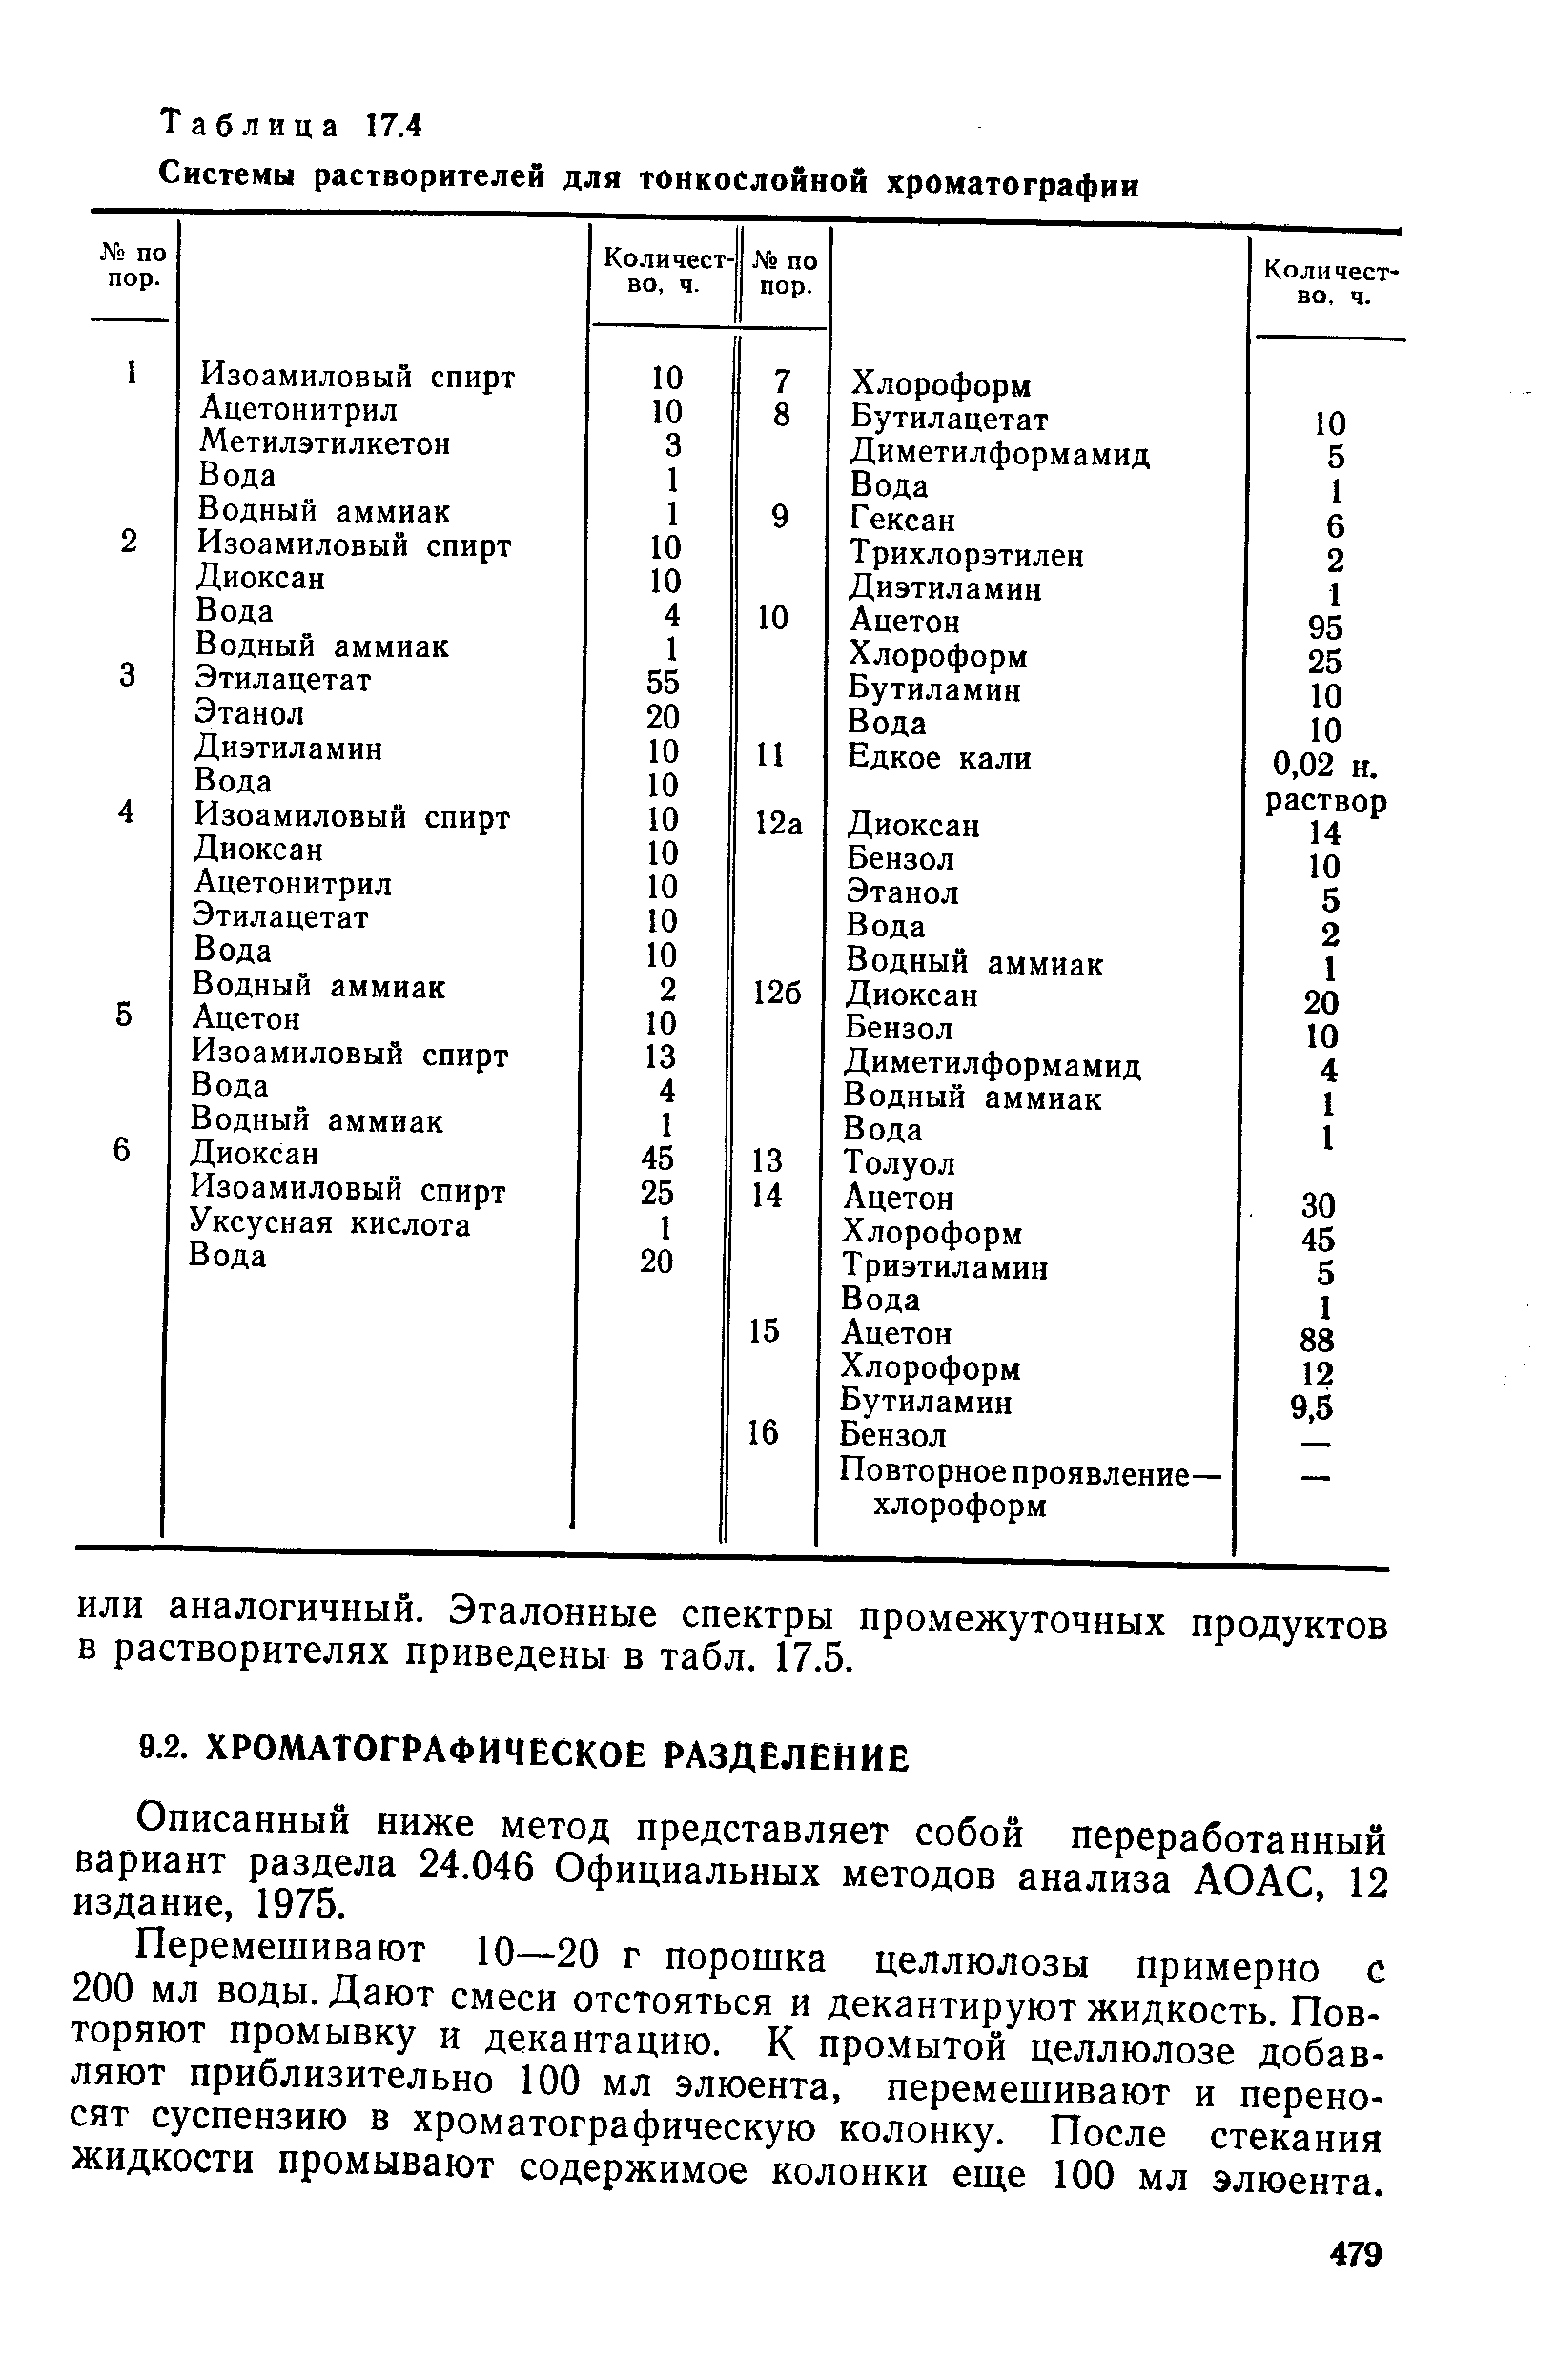 Описанный ниже метод представляет собой переработанный вариант раздела 24.046 Официальных методов анализа АОАС, 12 издание, 1975.